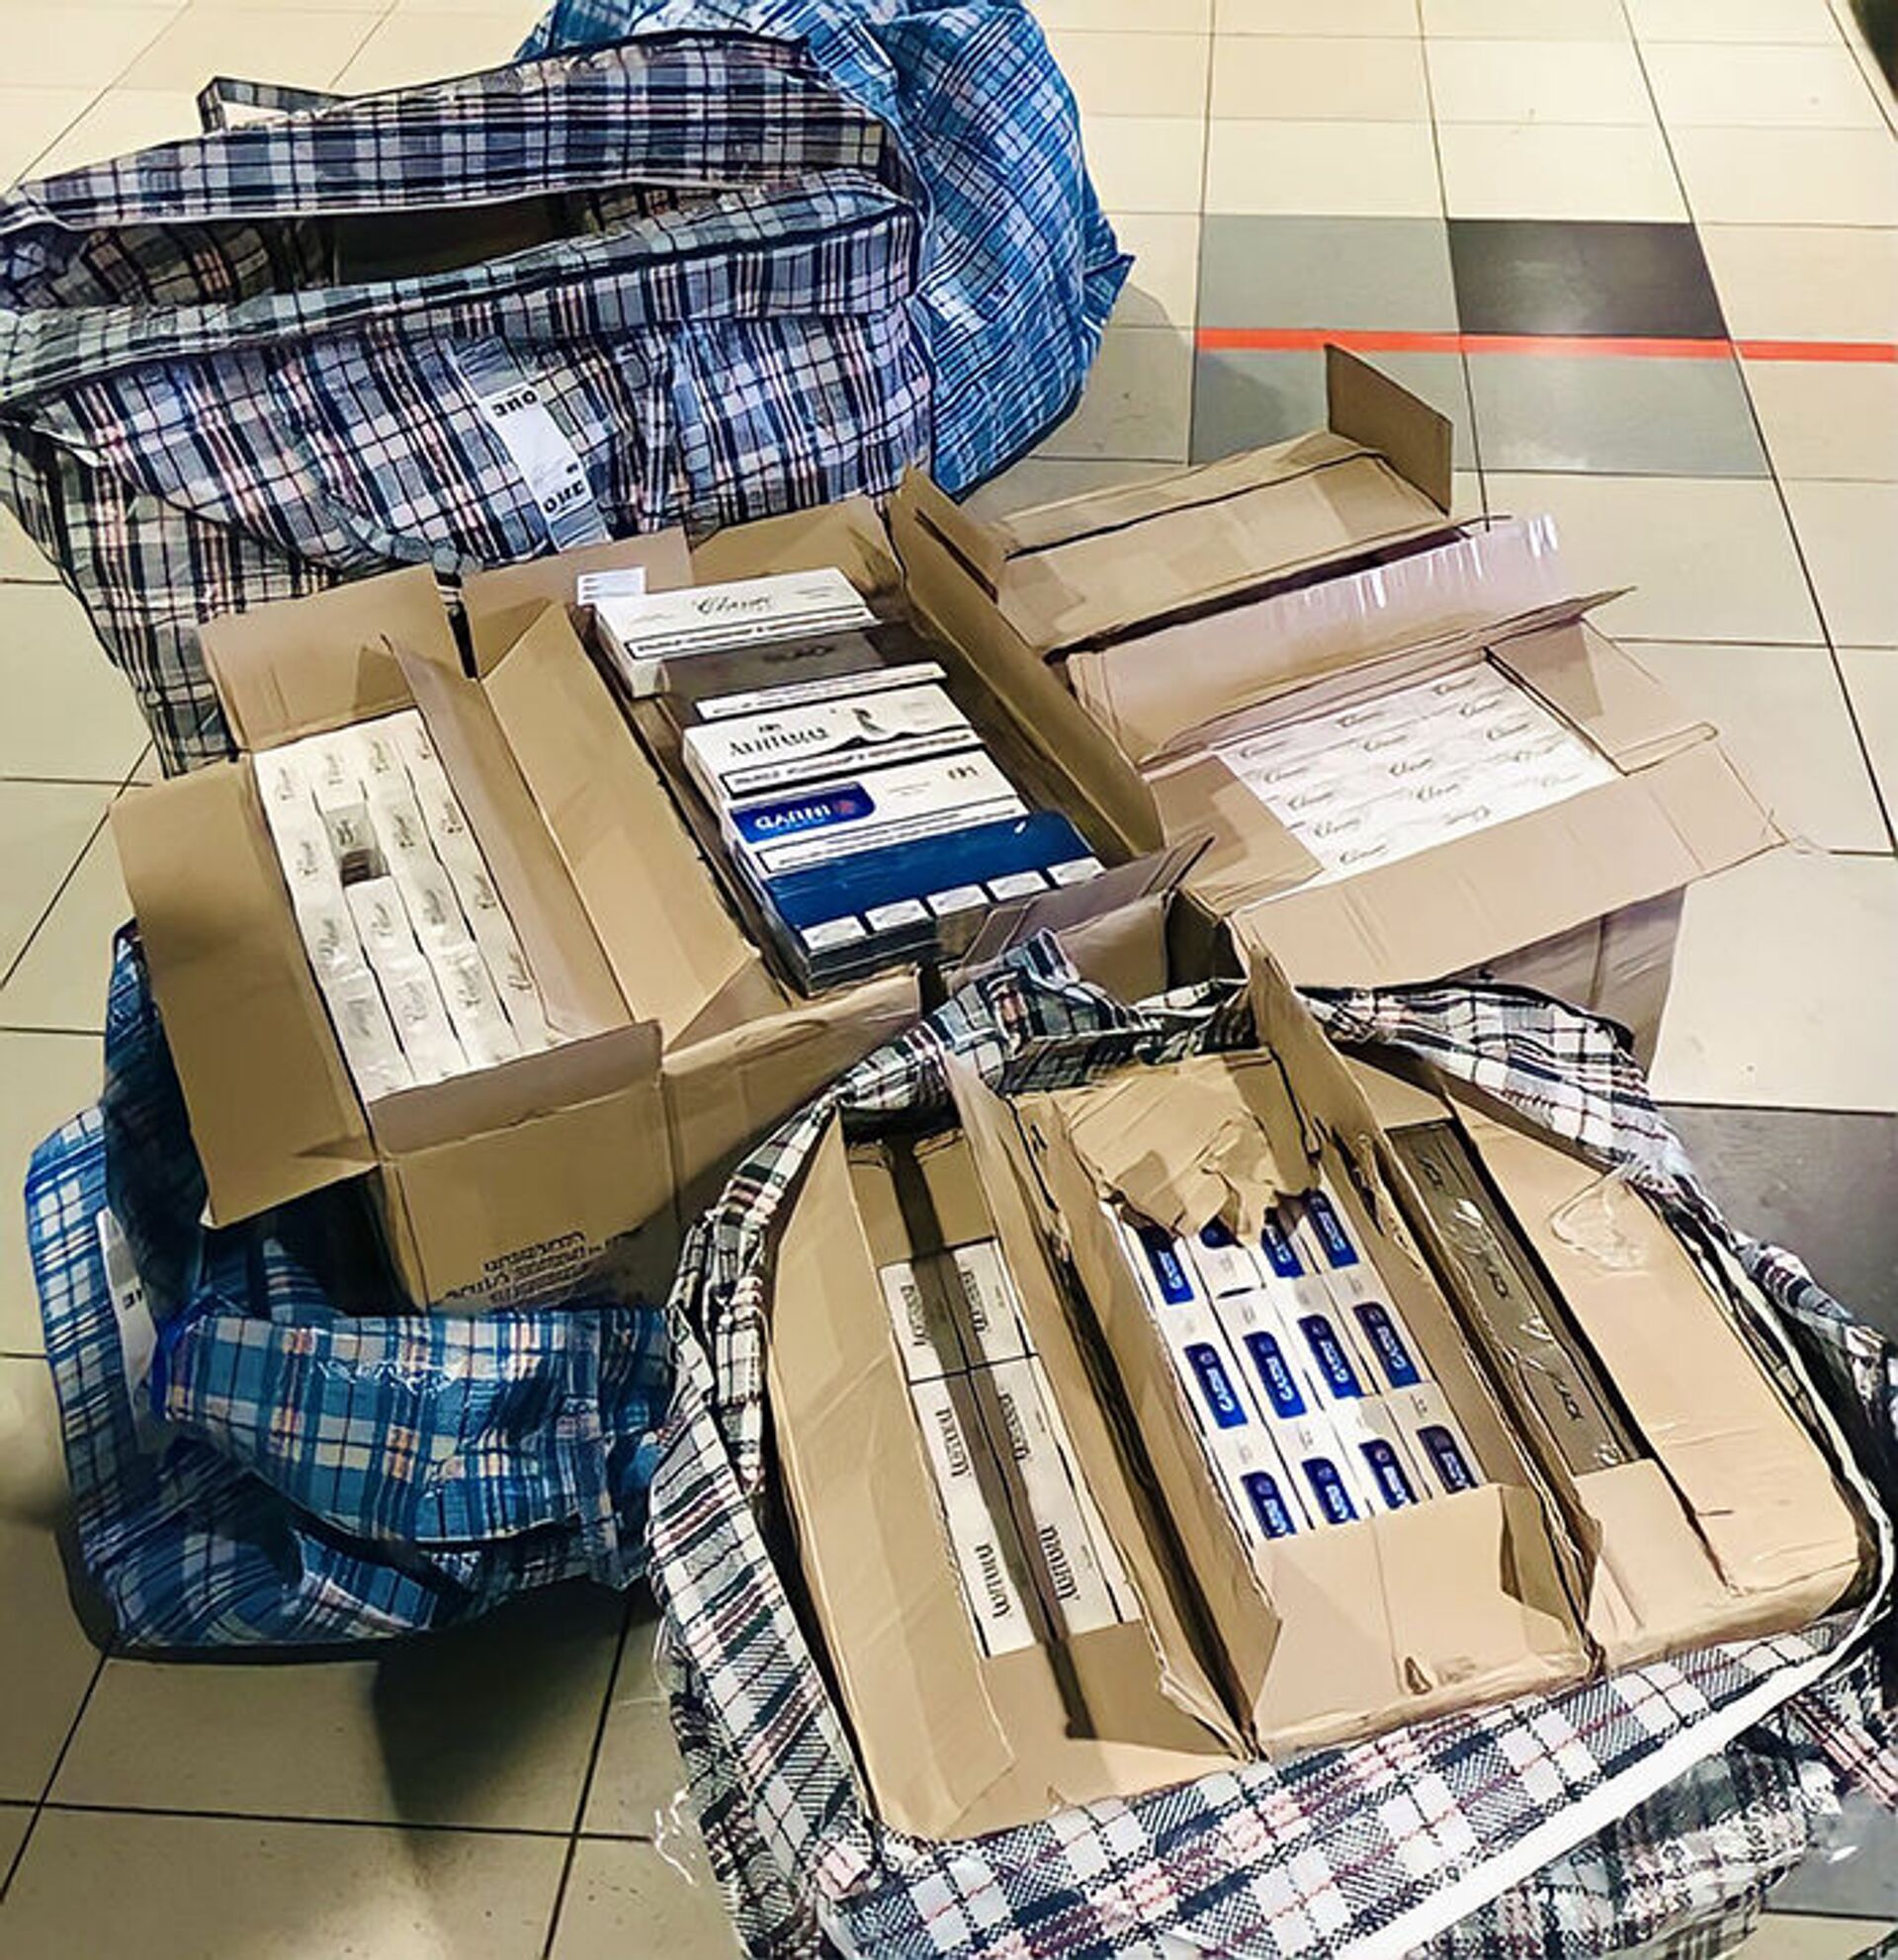 Контрабандные армянские сигареты в багаже пассажиров, обнаруженные в аэропорту Домодедово - Sputnik Армения, 1920, 14.09.2021